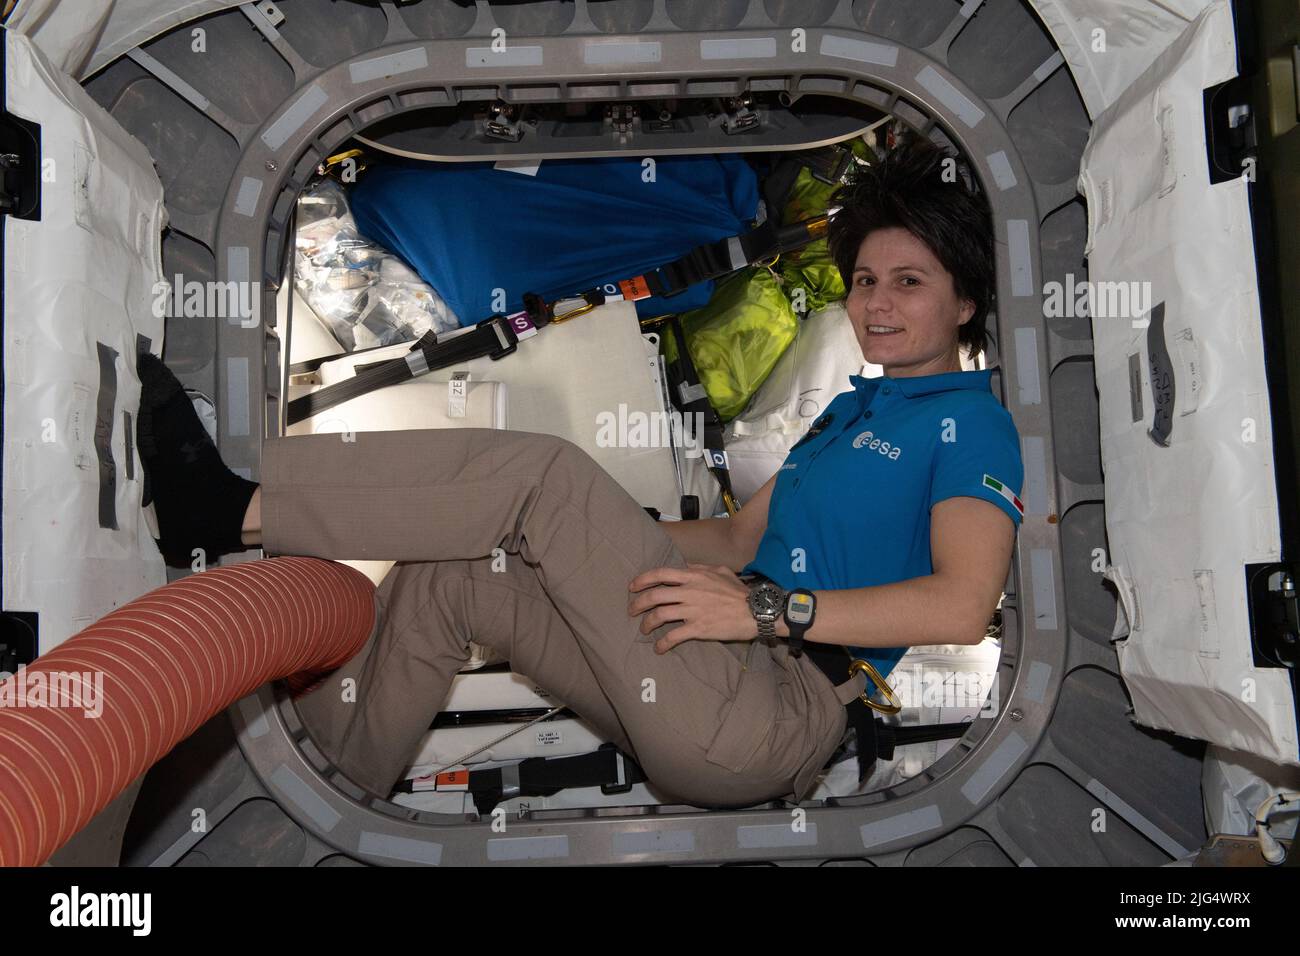 Expedición a la Estación Espacial Internacional 67 Ingeniero de Vuelo Samantha Cristoforetti de la ESA, dentro del vestíbulo entre el módulo Unity y el carguero espacial Cygnus finalizando las operaciones de carga a bordo del spacelab en órbita, el 27 de junio de 2022 en órbita terrestre. Foto de stock